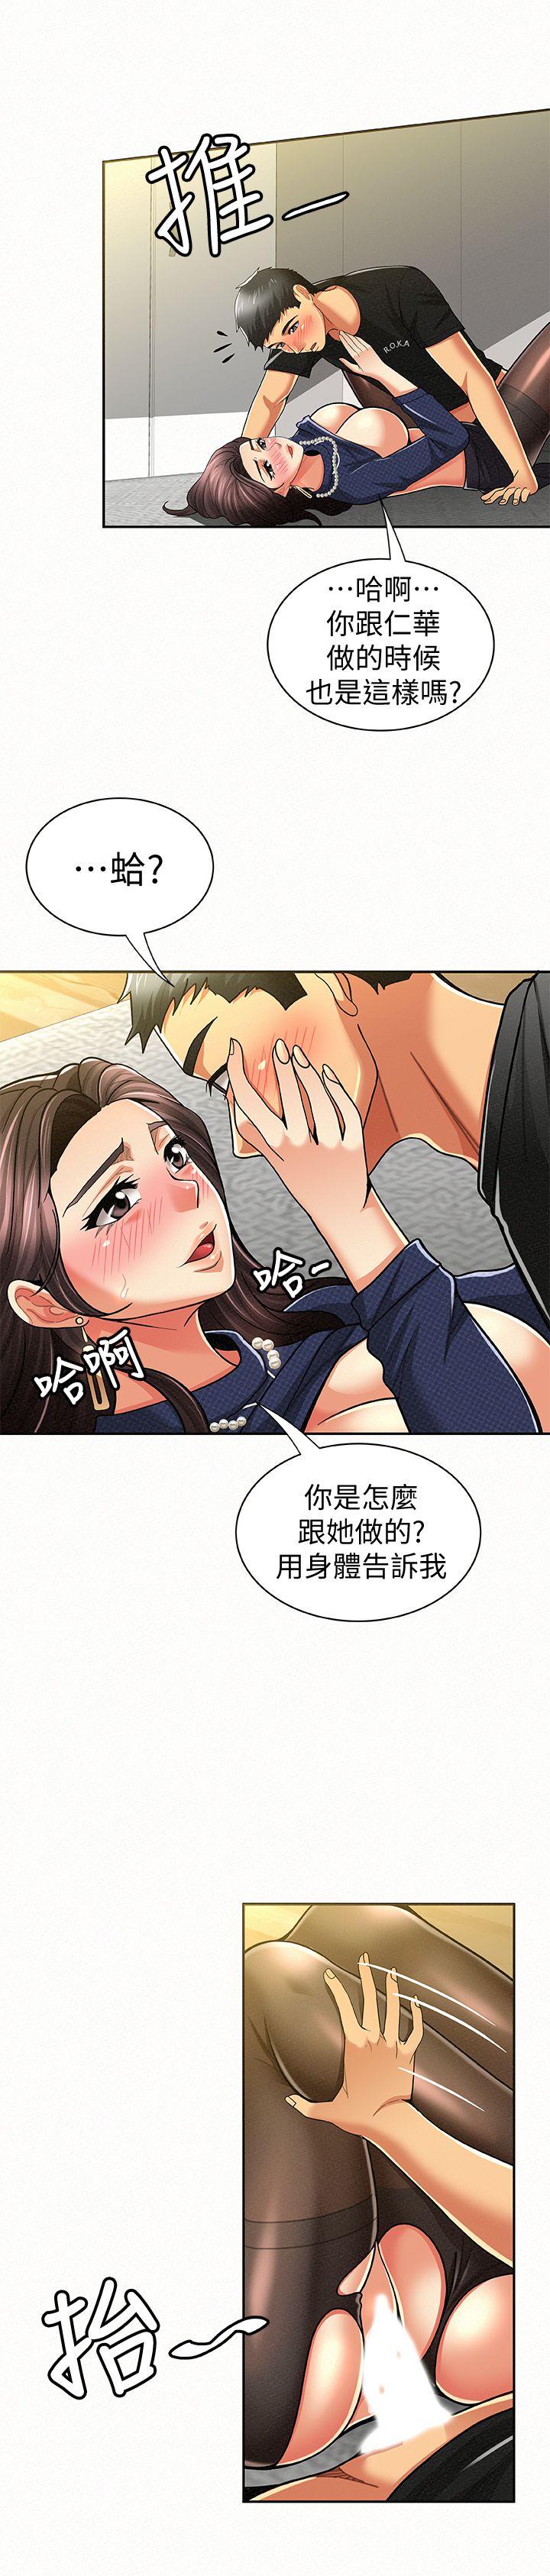 韩国污漫画 報告夫人 第13话-夫人的嫉妒心 14